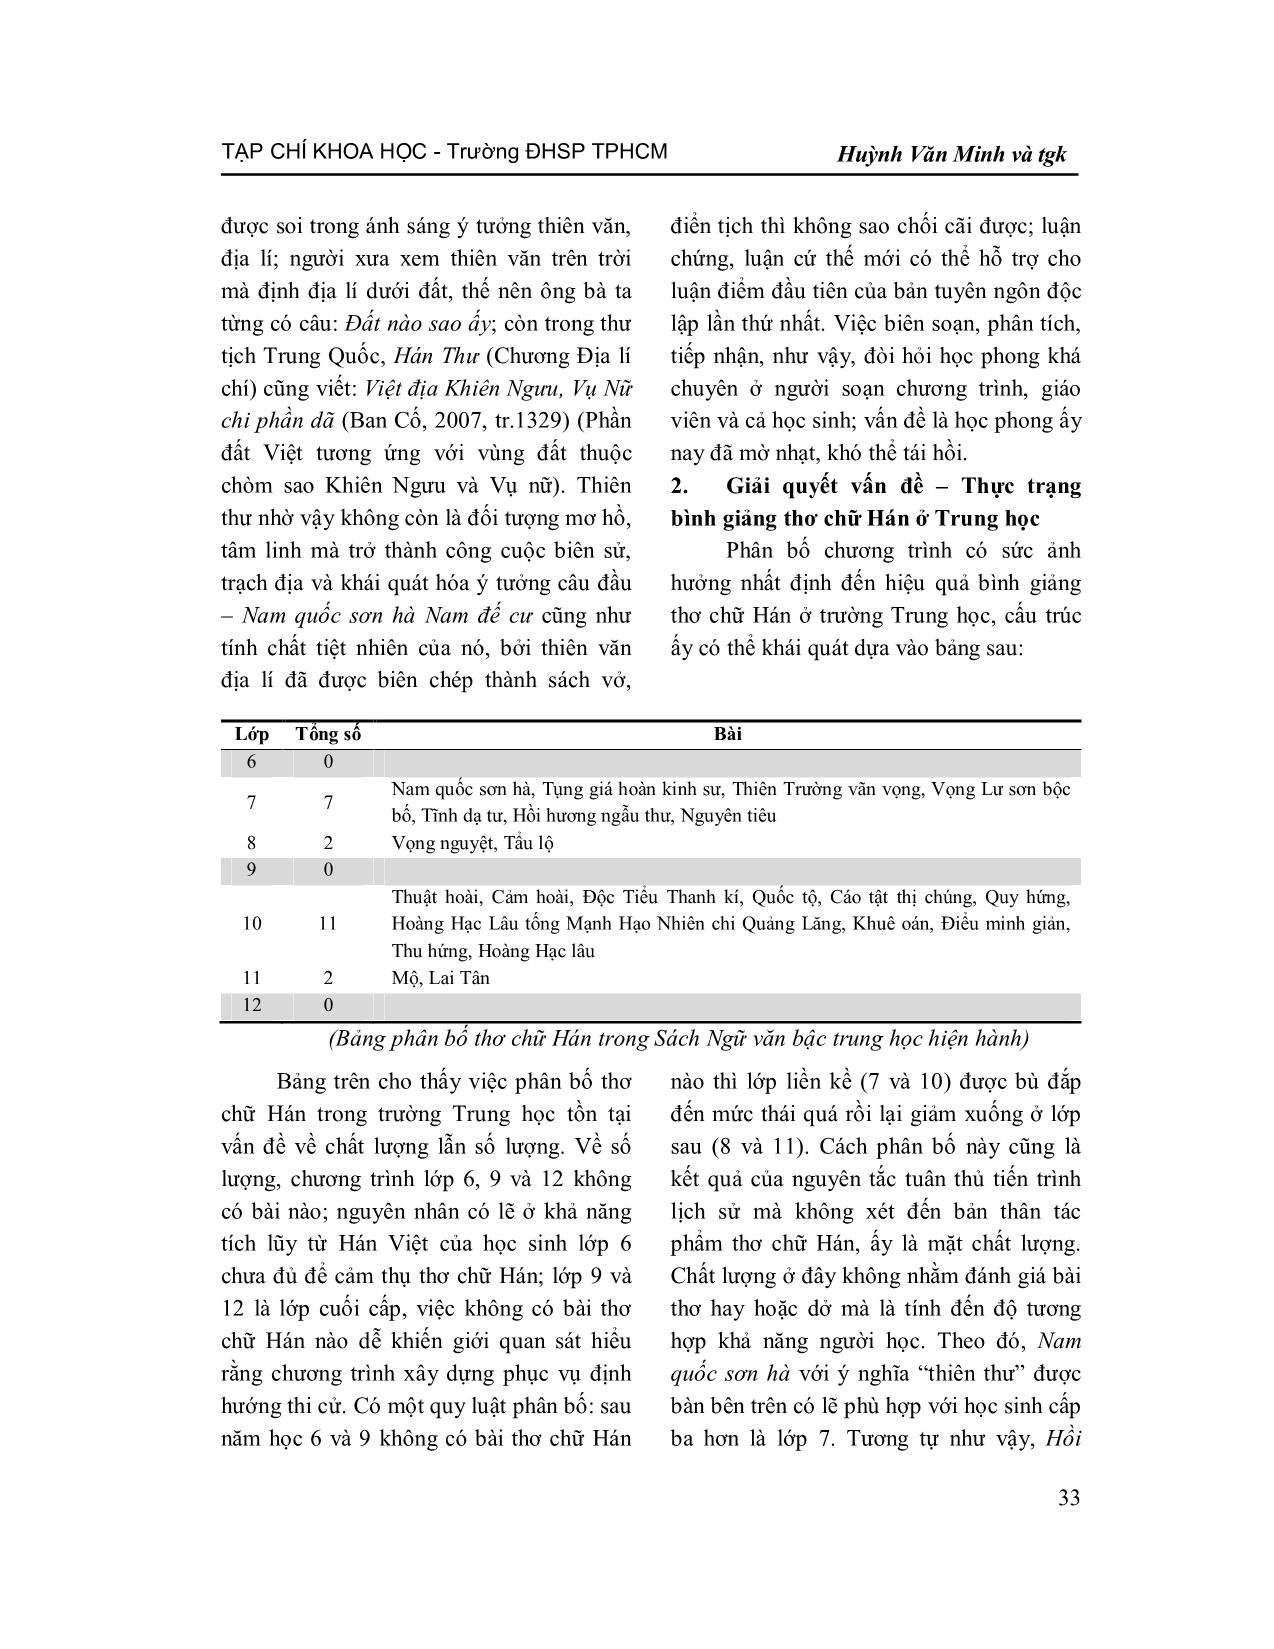 Tiếp cận văn bản thơ chữ Hán trong chương trình Trung học từ góc độ từ vựng, ngữ pháp trang 4